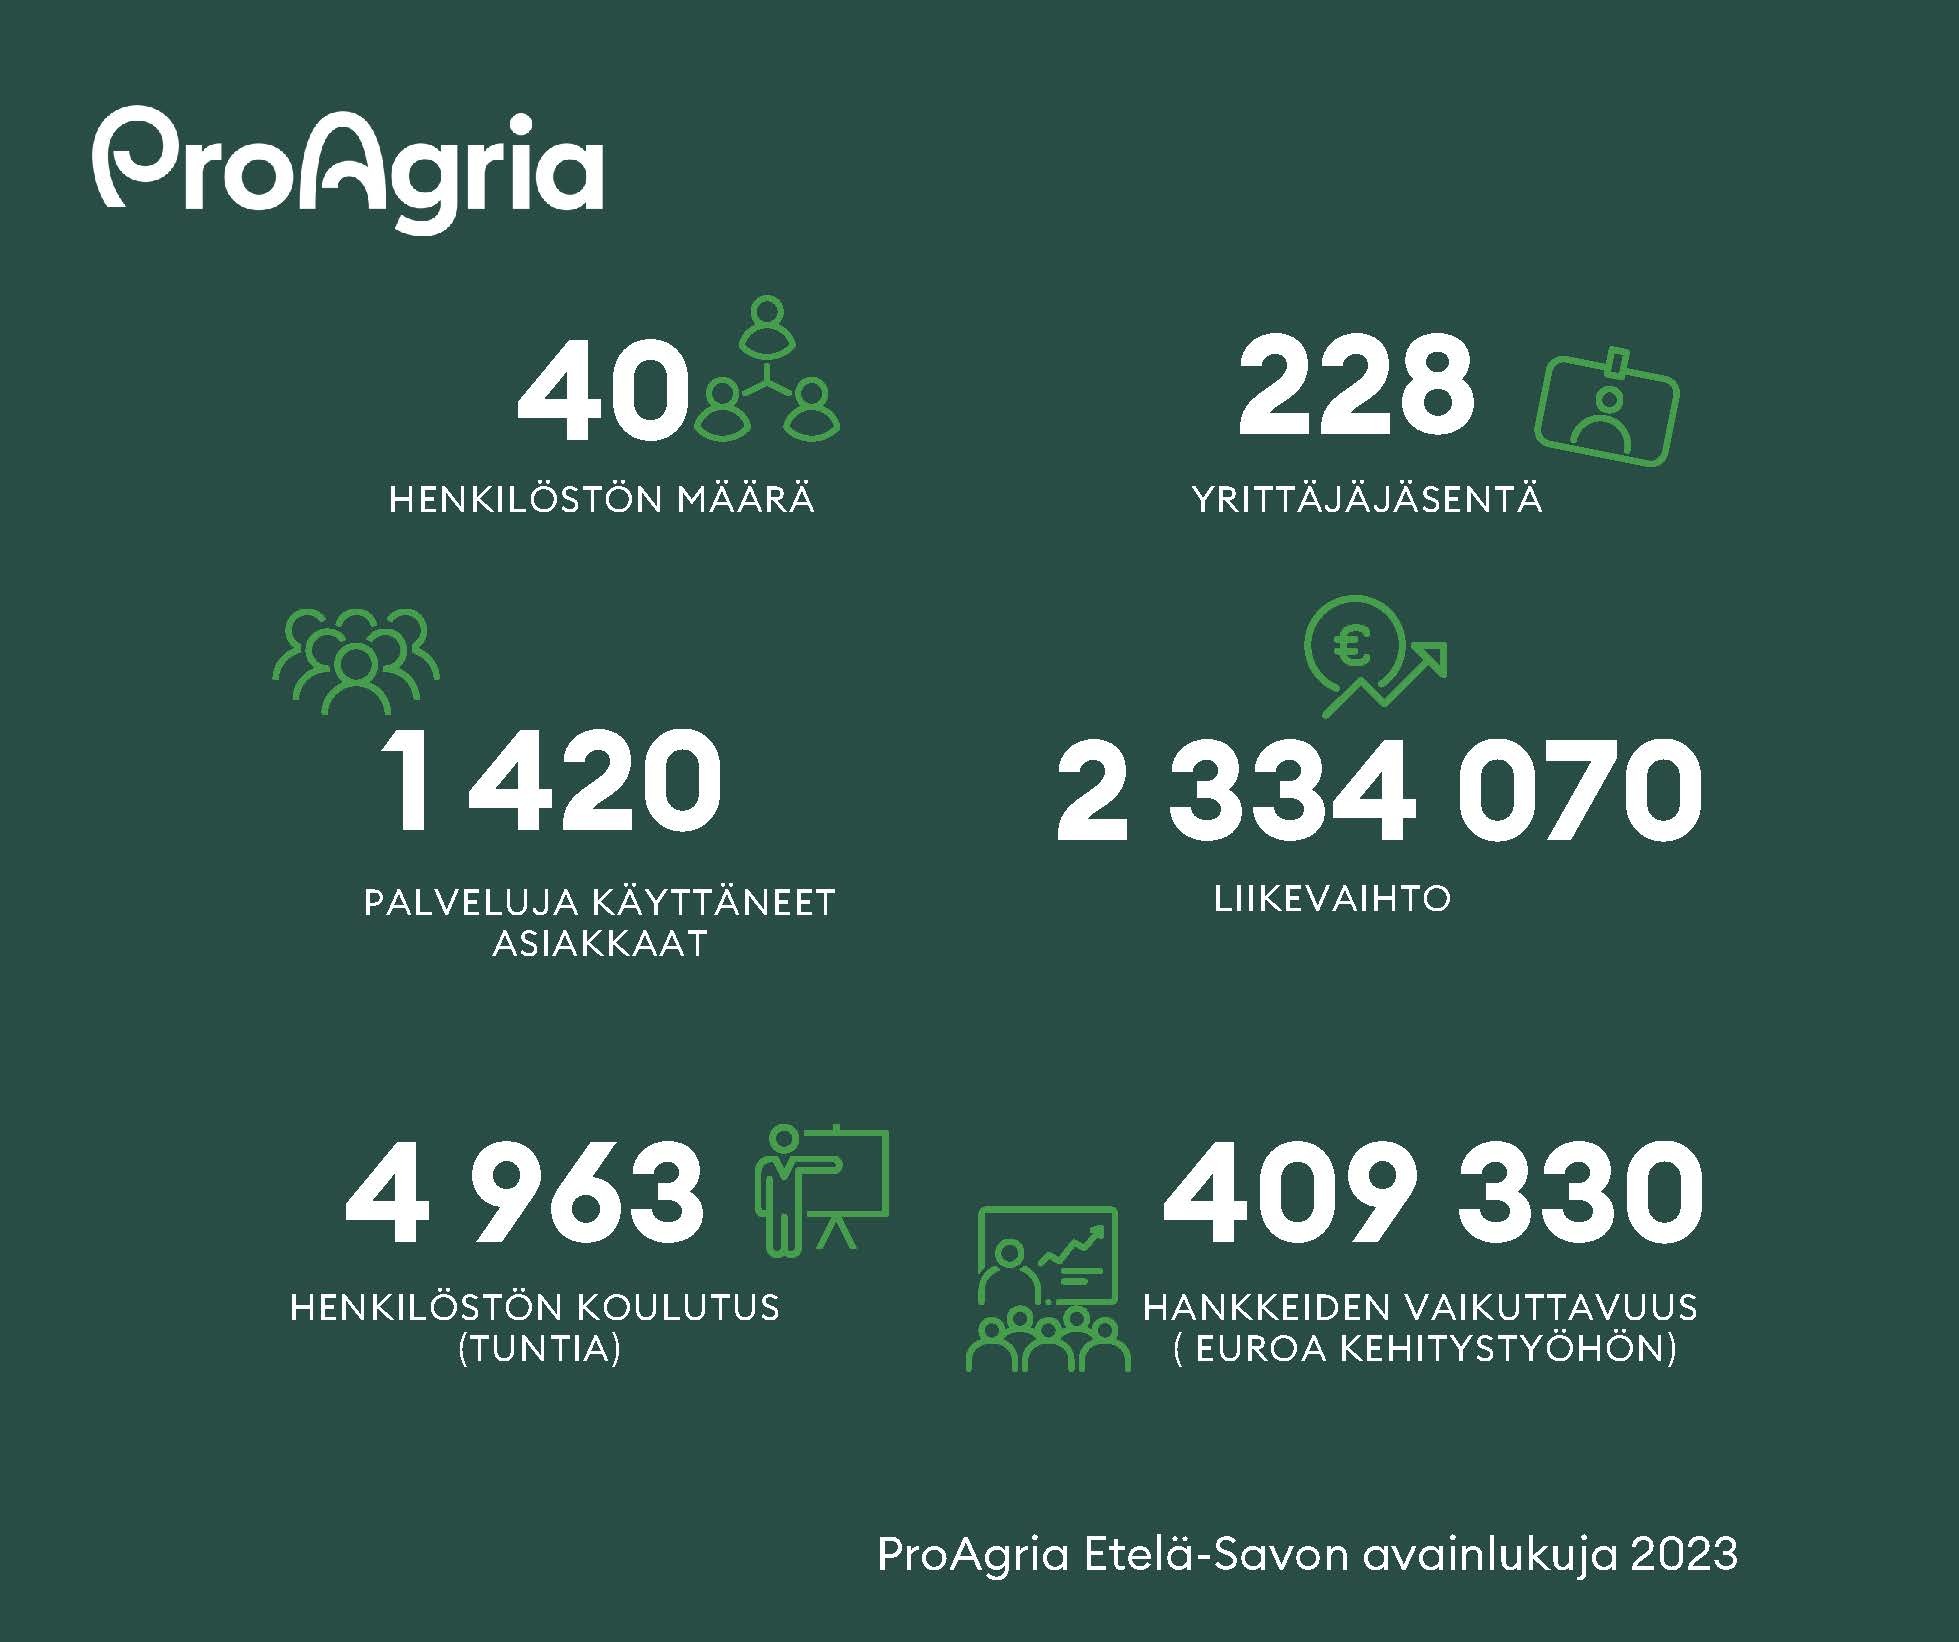 ProAgria Etelä-Savon avainlukuja vuodelta 2023